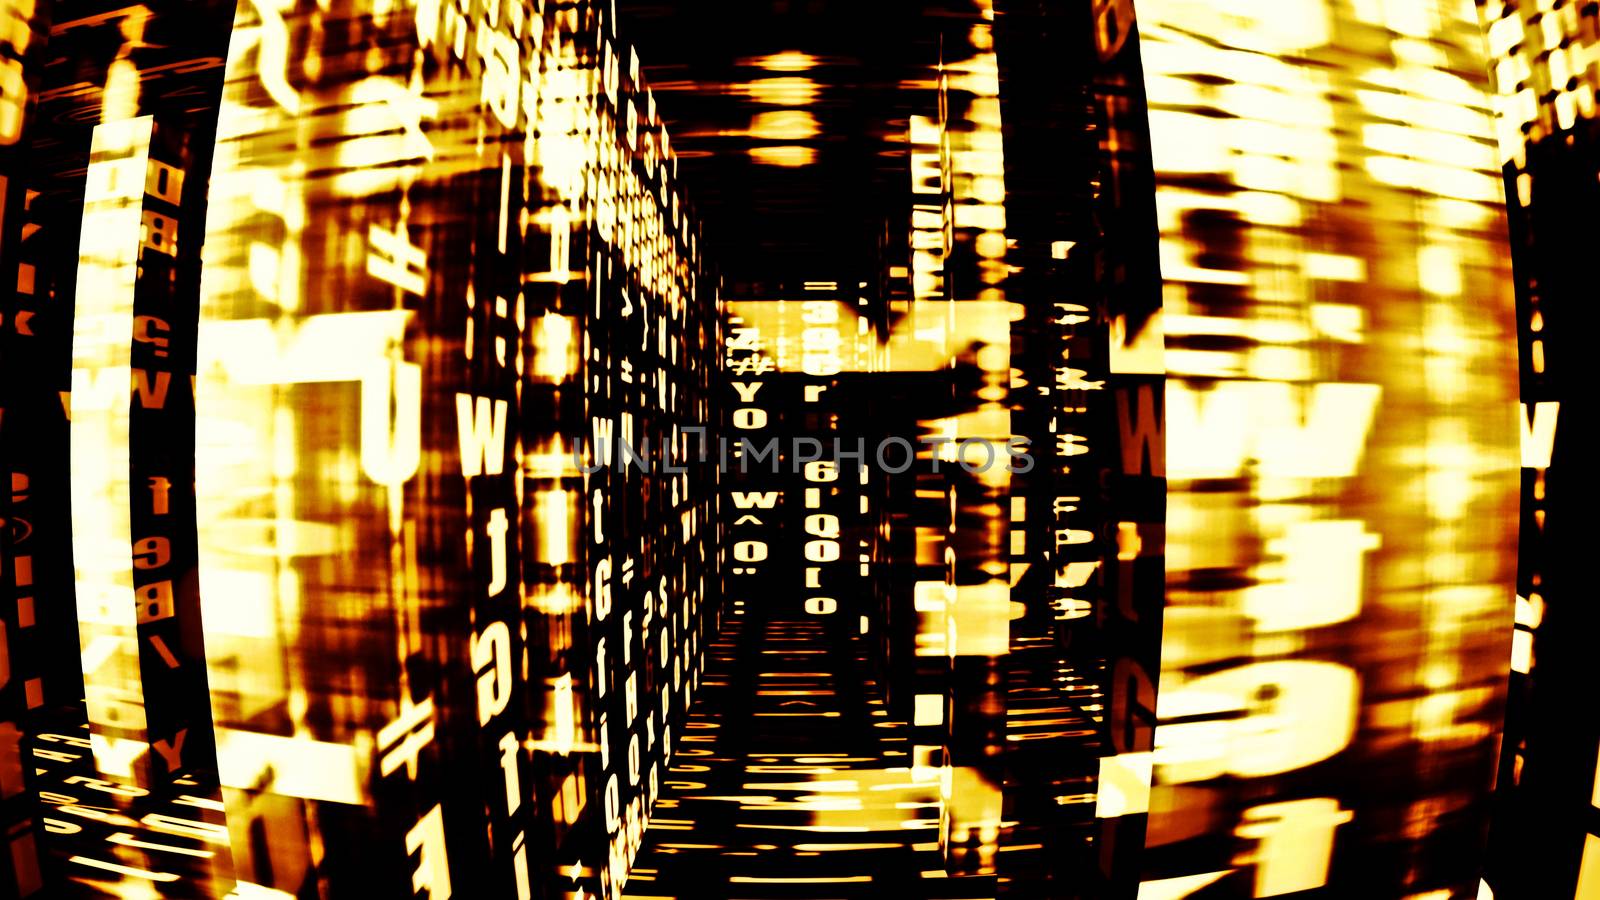 Digital Data Chaos 0243 by aLunaBlue